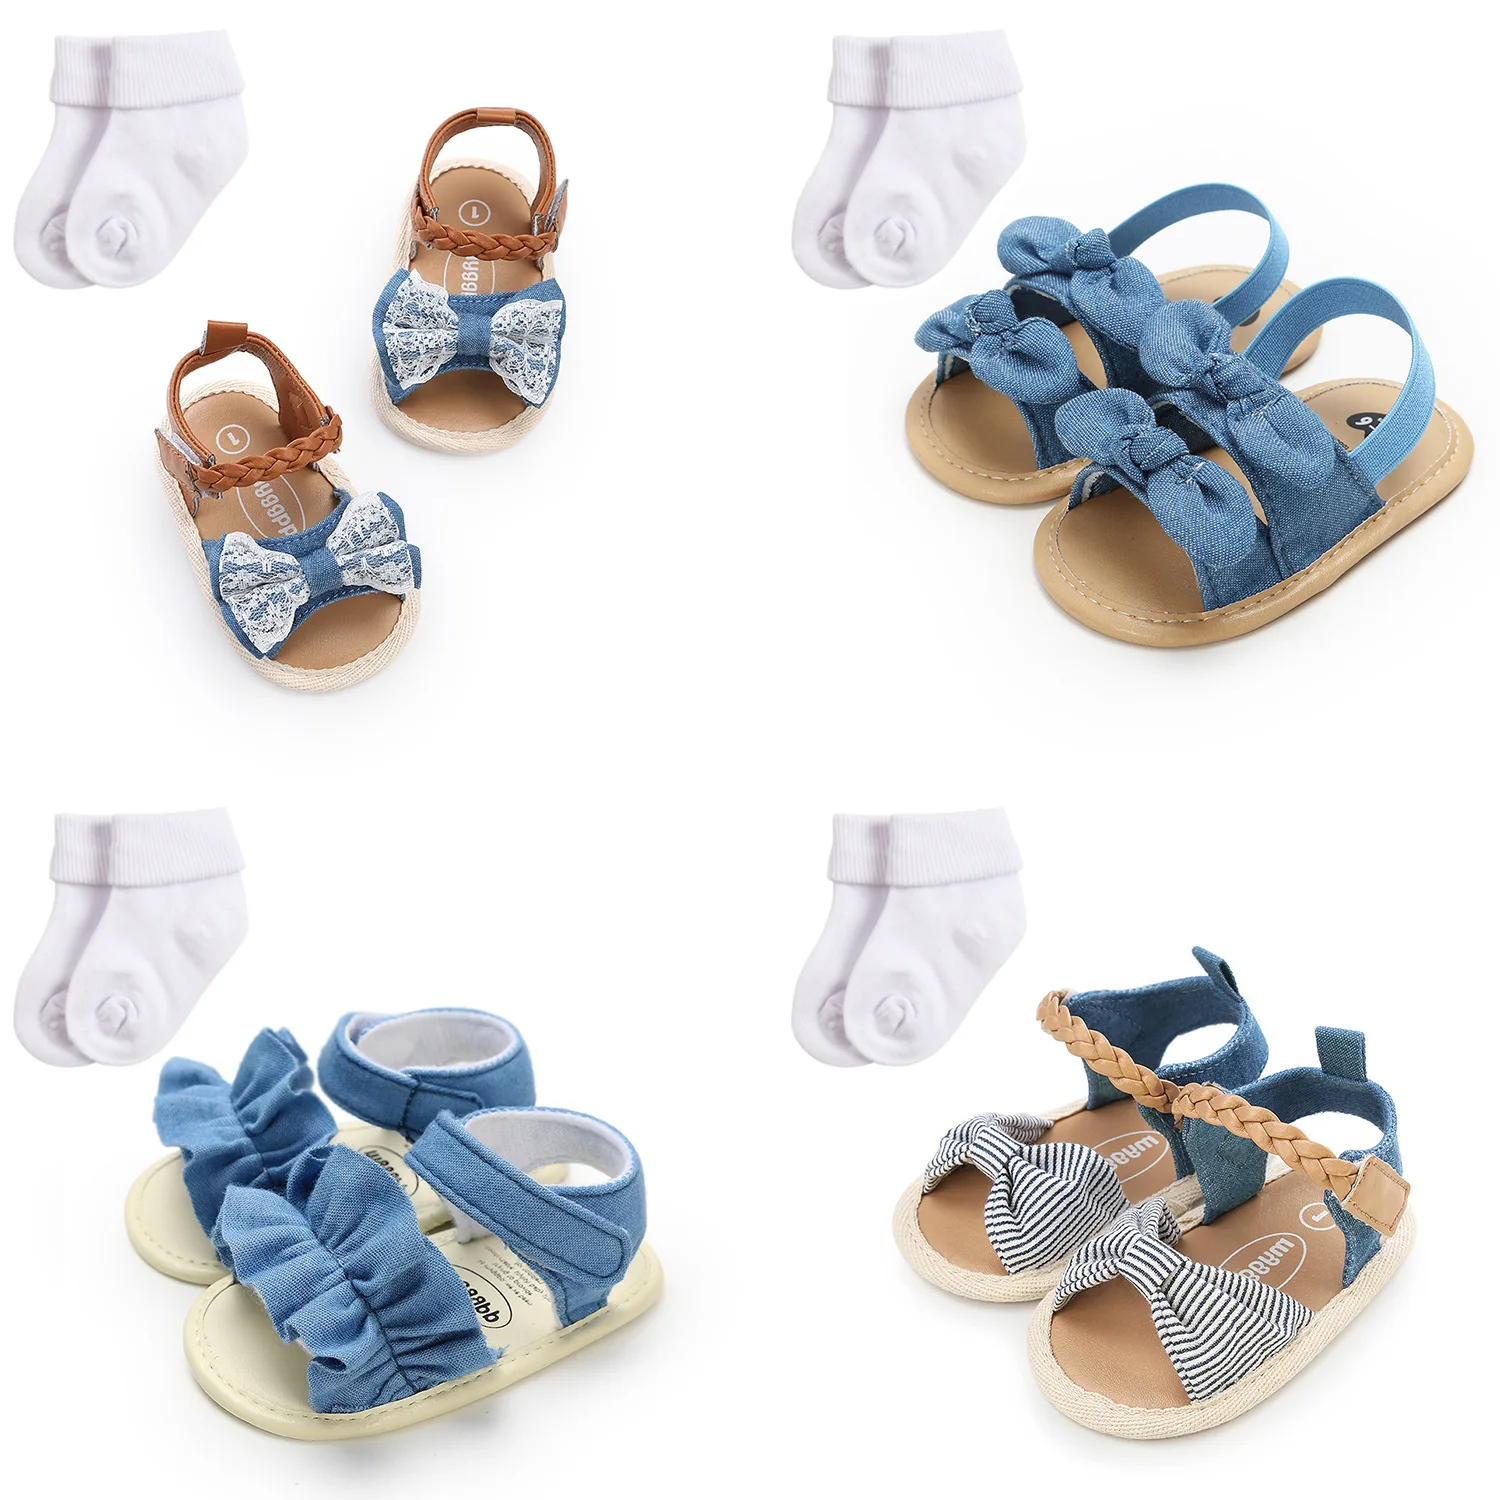 Sandalias De Bebé Y Zapatilla Para Niña,Zapatos De 1 Año Para Niños Y - Buy Bebé Y Zapatillas Sandalias,Bebé Niña Sandalias,Los Niños Sandalias Product on Alibaba.com